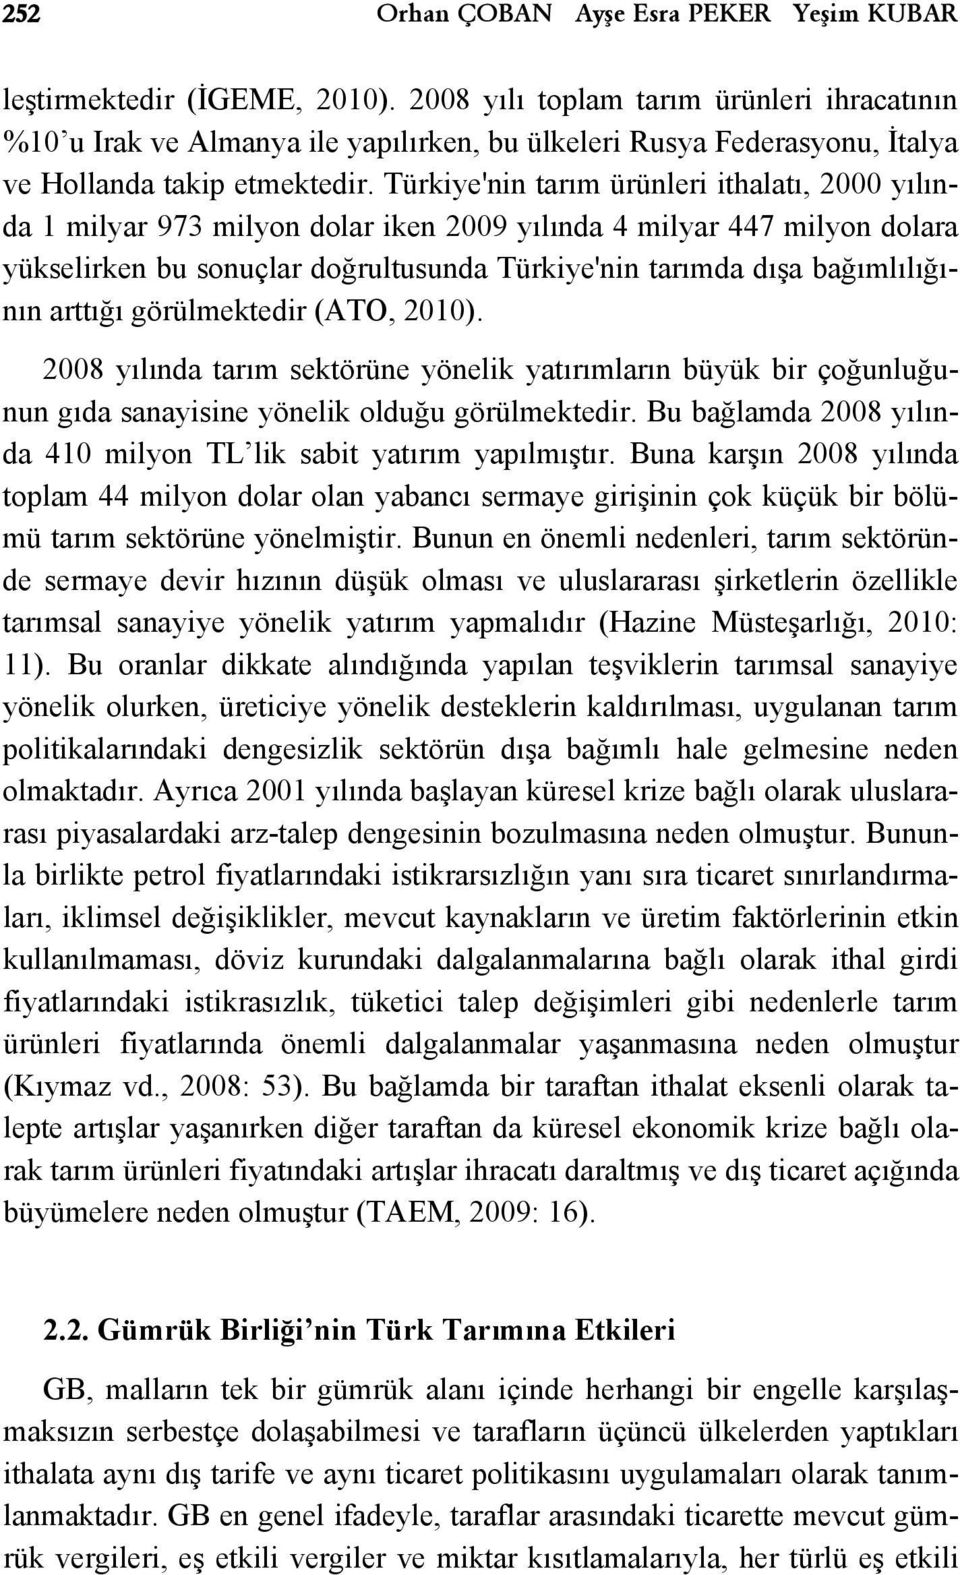 Türkiye'nin tarım ürünleri ithalatı, 2000 yılında 1 milyar 973 milyon dolar iken 2009 yılında 4 milyar 447 milyon dolara yükselirken bu sonuçlar doğrultusunda Türkiye'nin tarımda dışa bağımlılığının